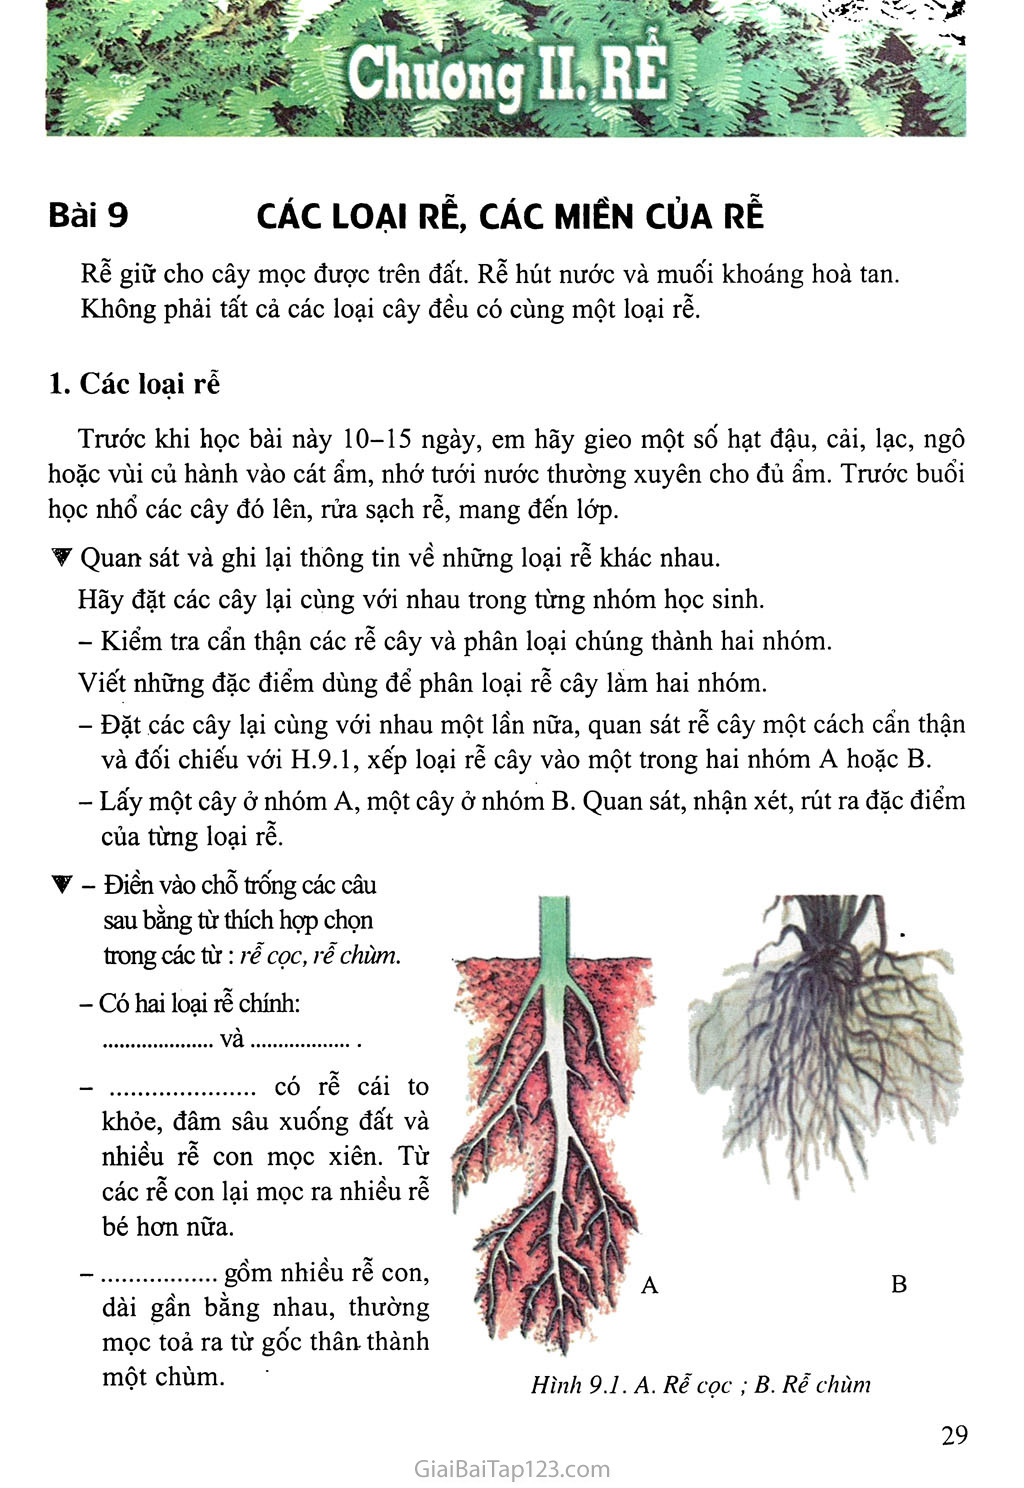 Bài 9: Các loại rễ, các miền của rễ trang 1